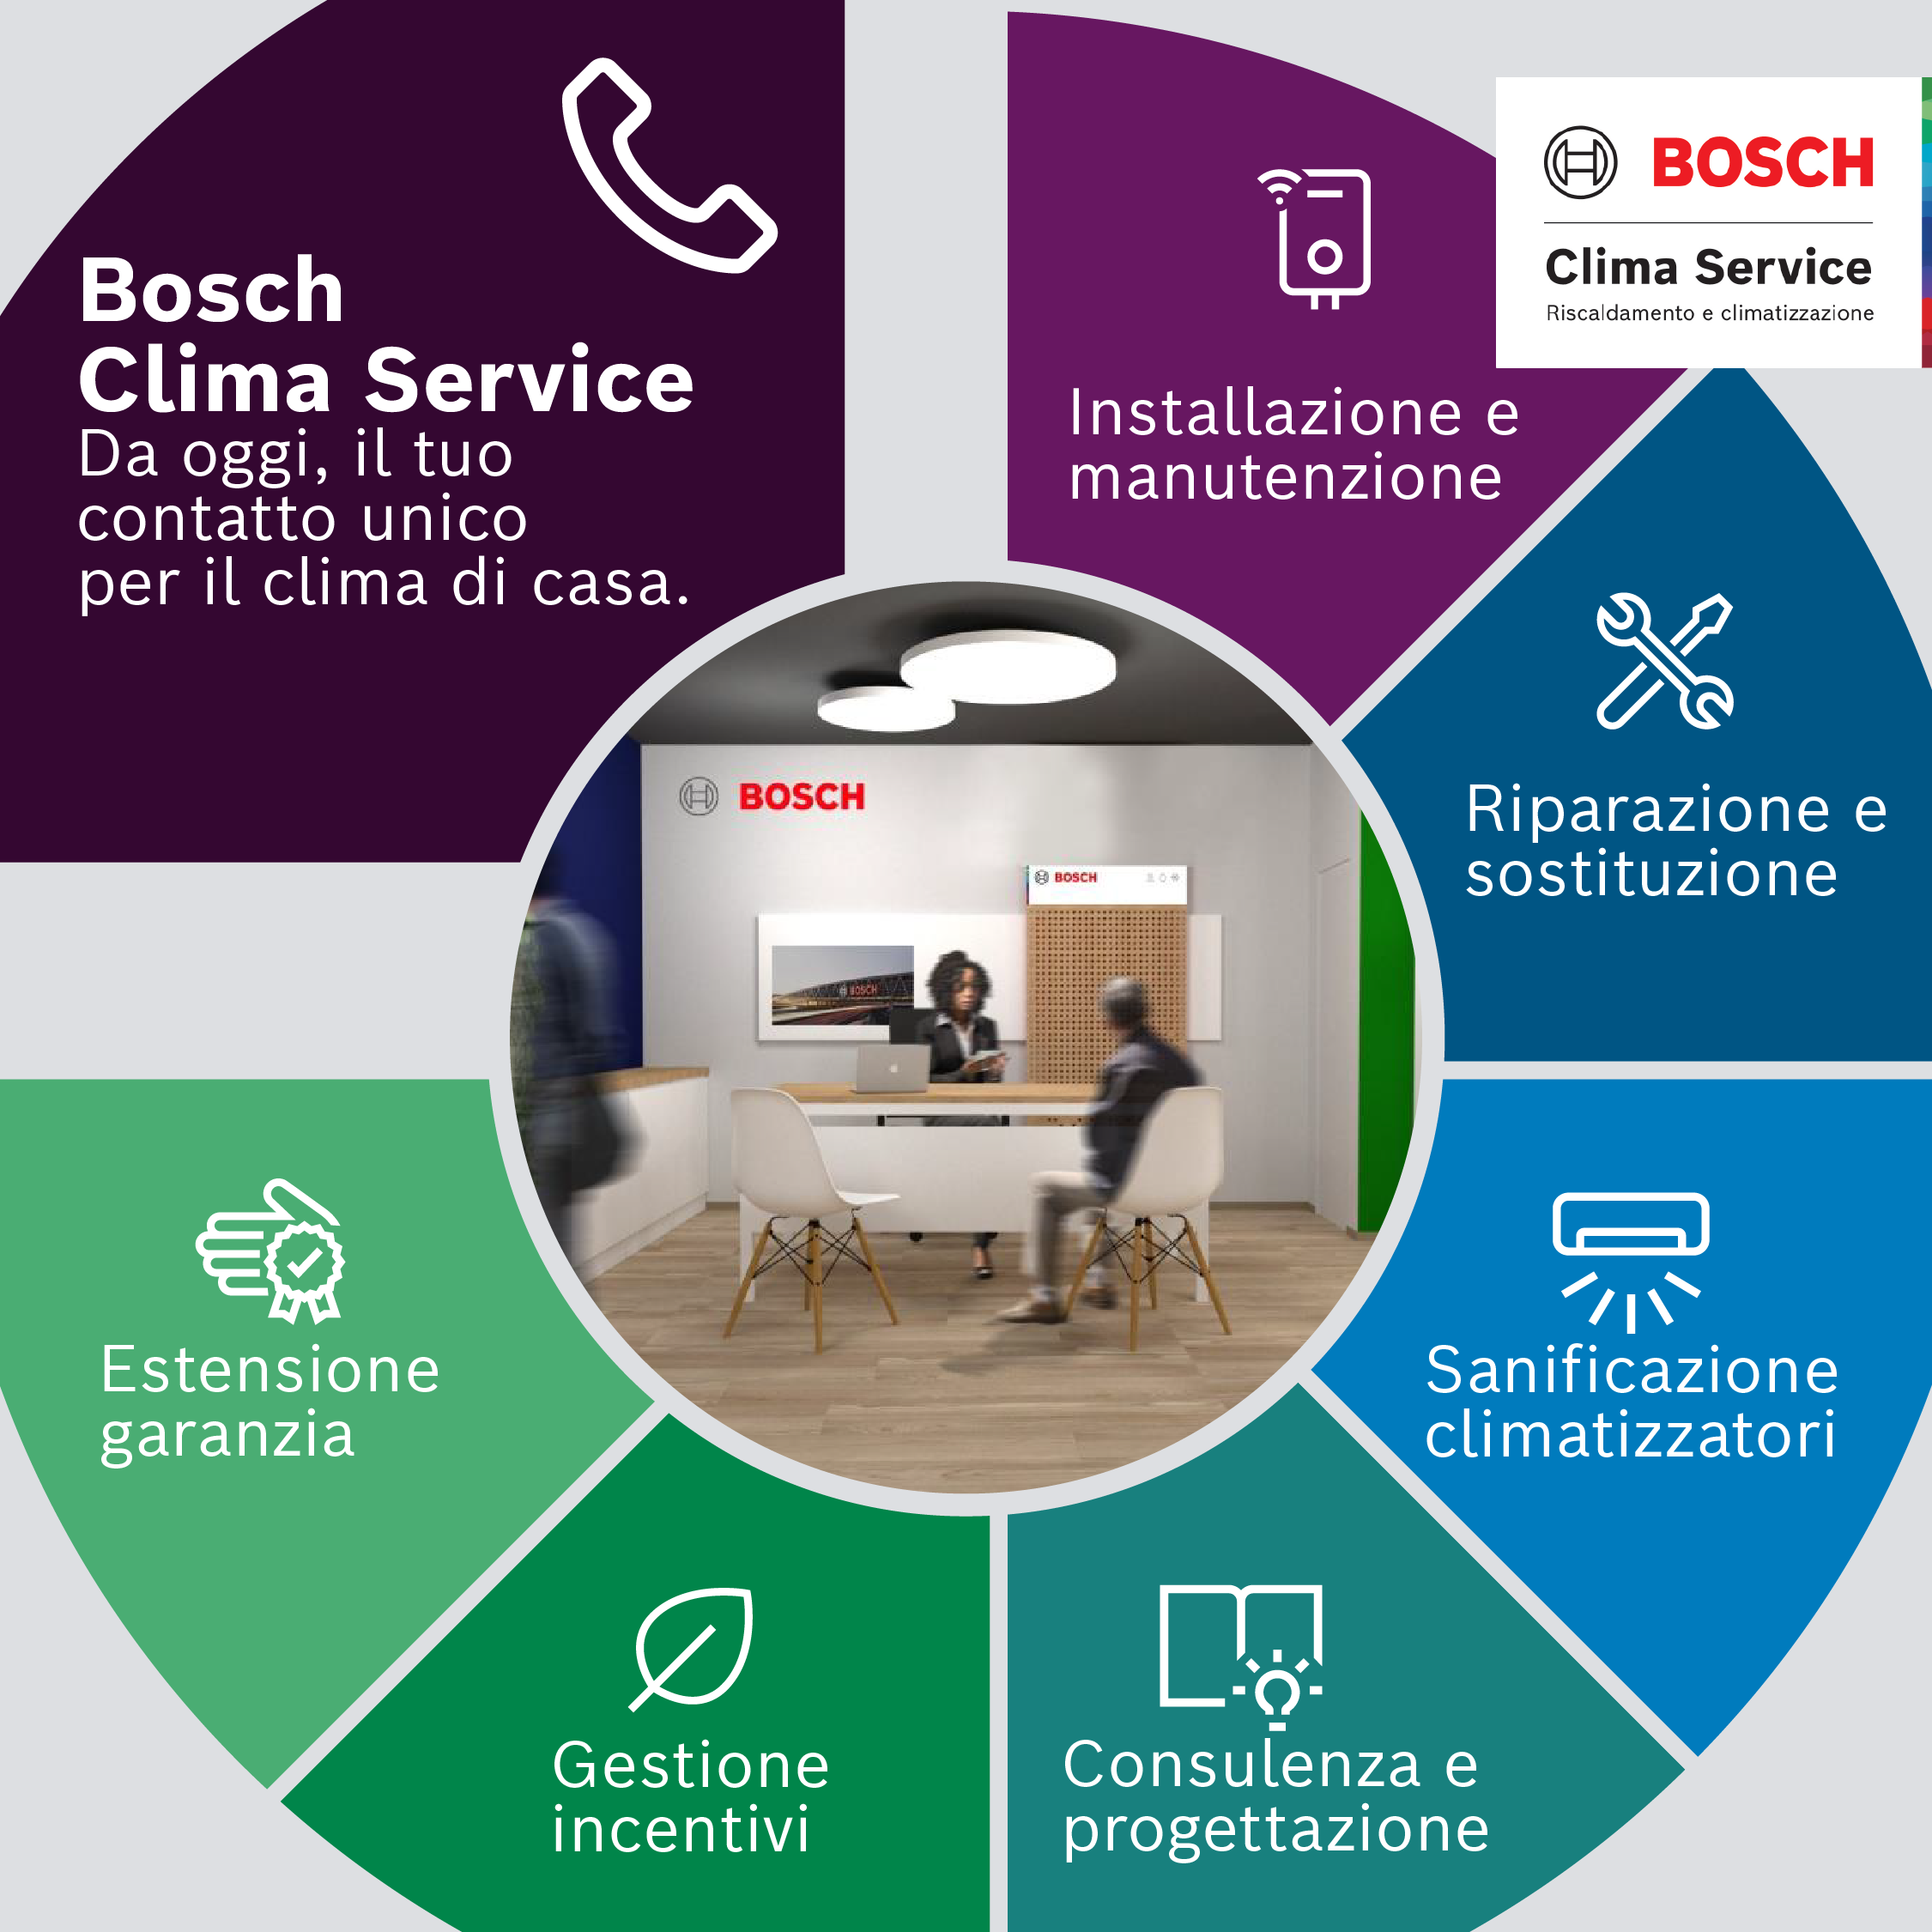 Bosch Clima Service: professionalità, affidabilità e competenza al servizio del comfort domestico